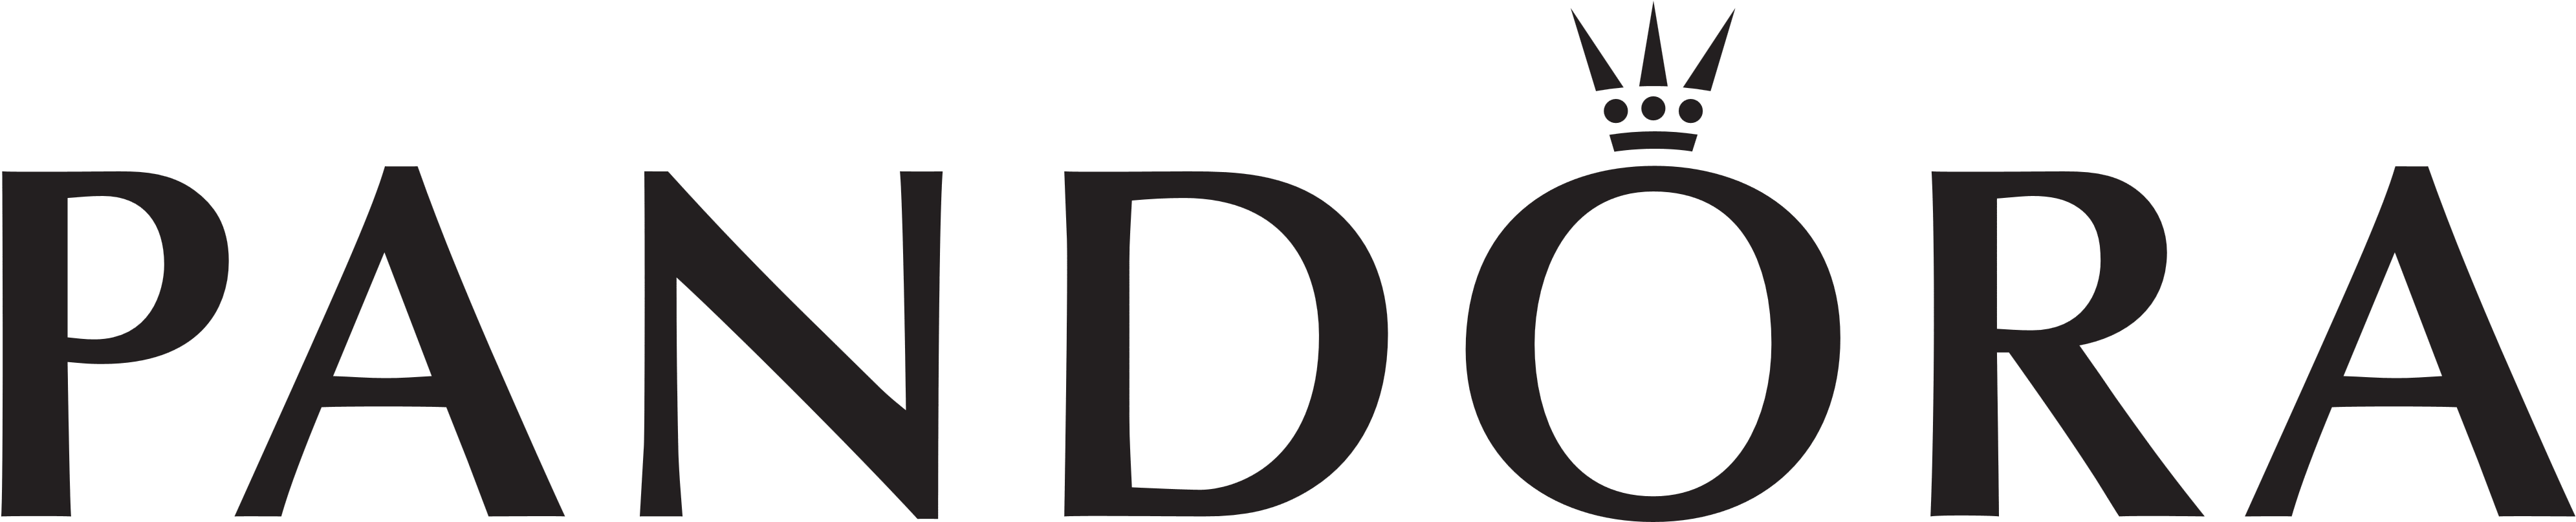 Pandora Logo & Logotype - Pandora High Res Logo (4200x1000), Png Download